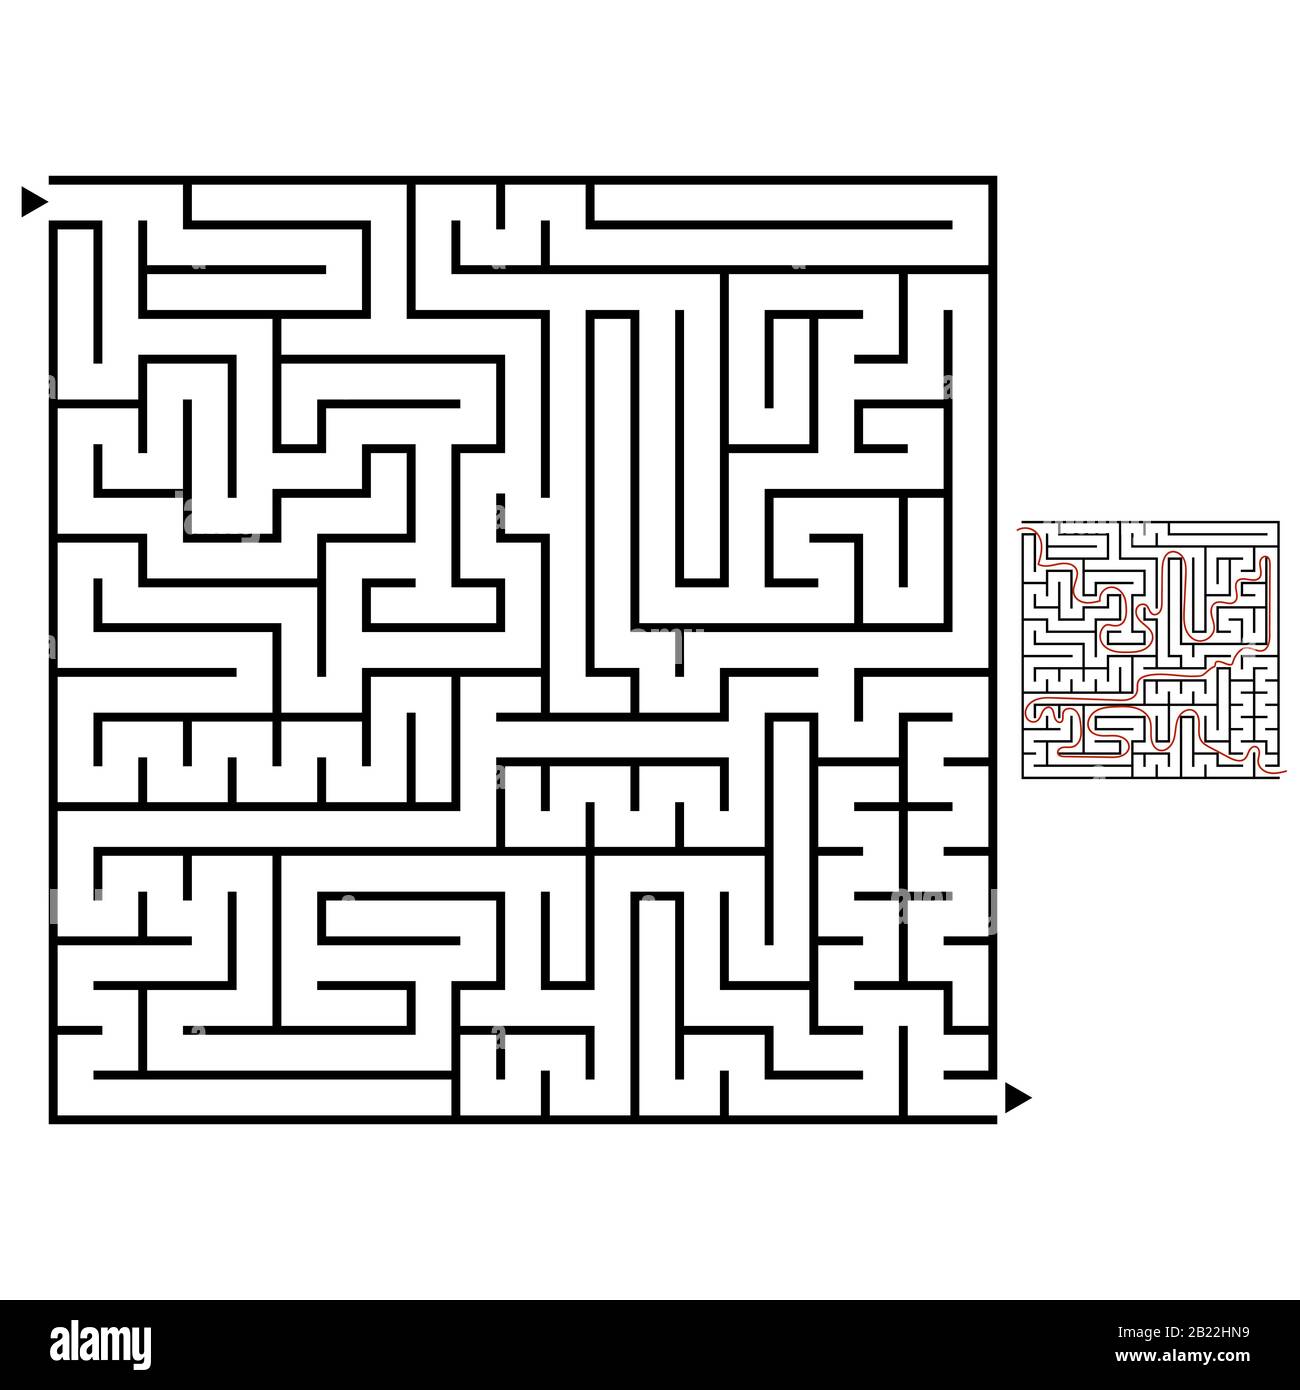 Abstraktes quadratisches Labyrinth mit schwarzem Schlaganfall. Ein interessantes Spiel für Kinder und Erwachsene. Einfache flache Vektordarstellung isoliert auf weißem Backgrou Stock Vektor